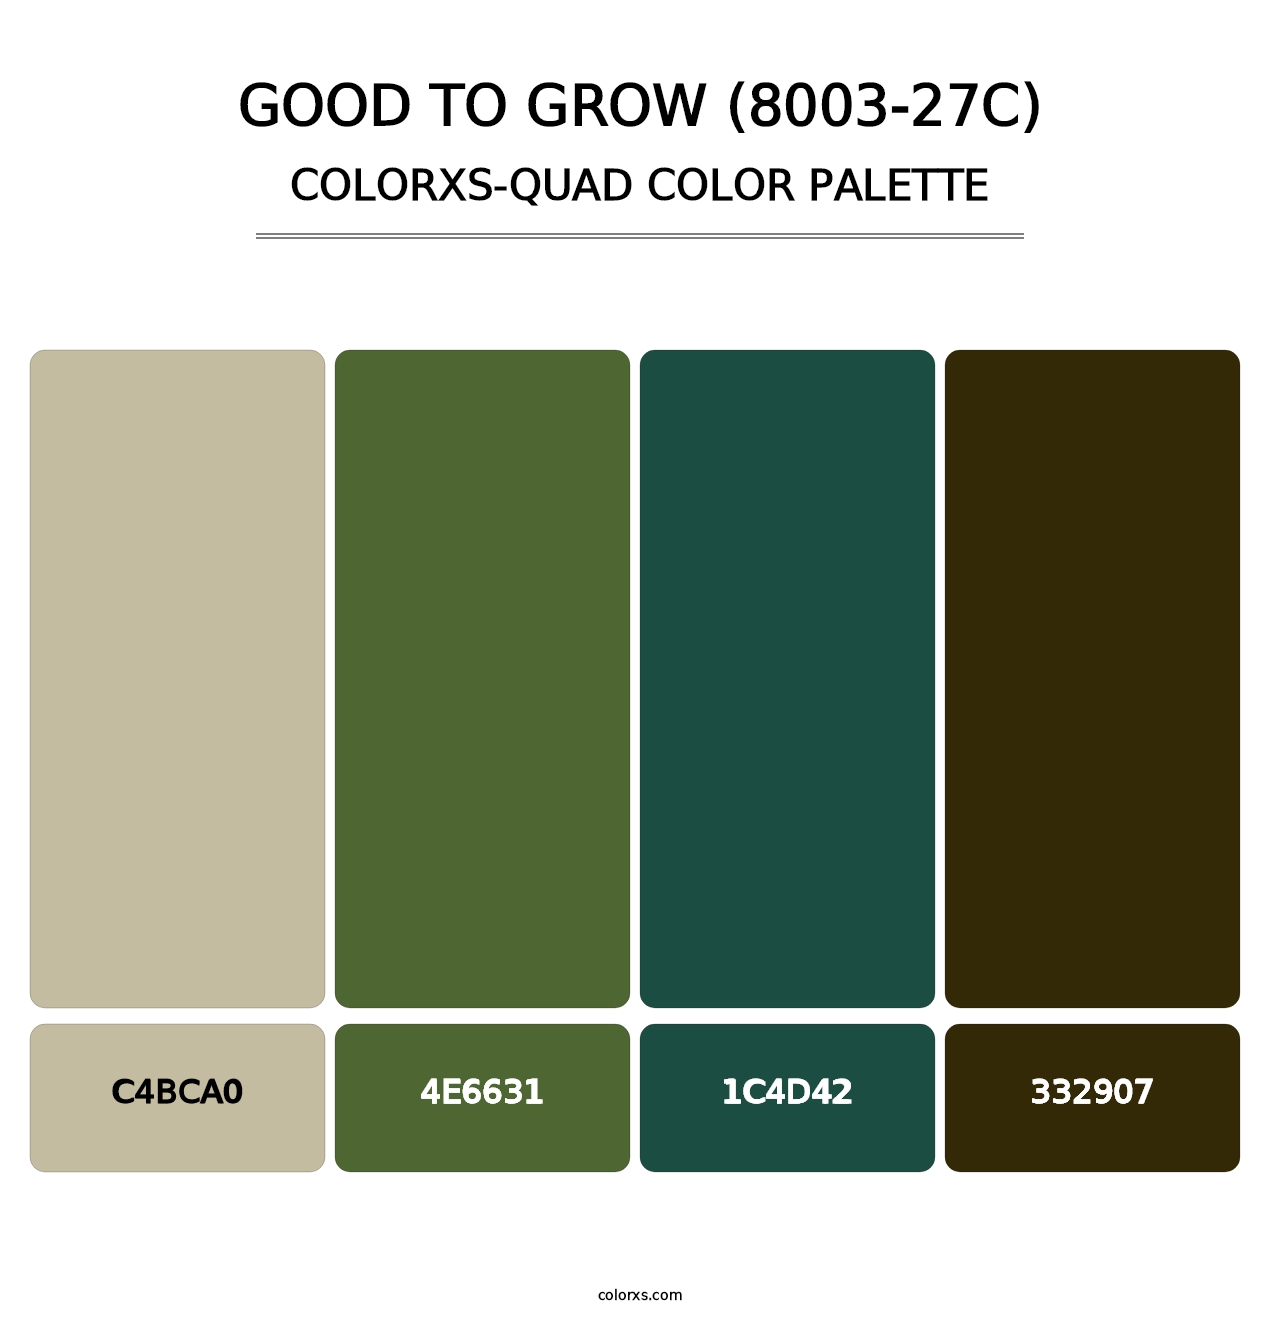 Good to Grow (8003-27C) - Colorxs Quad Palette